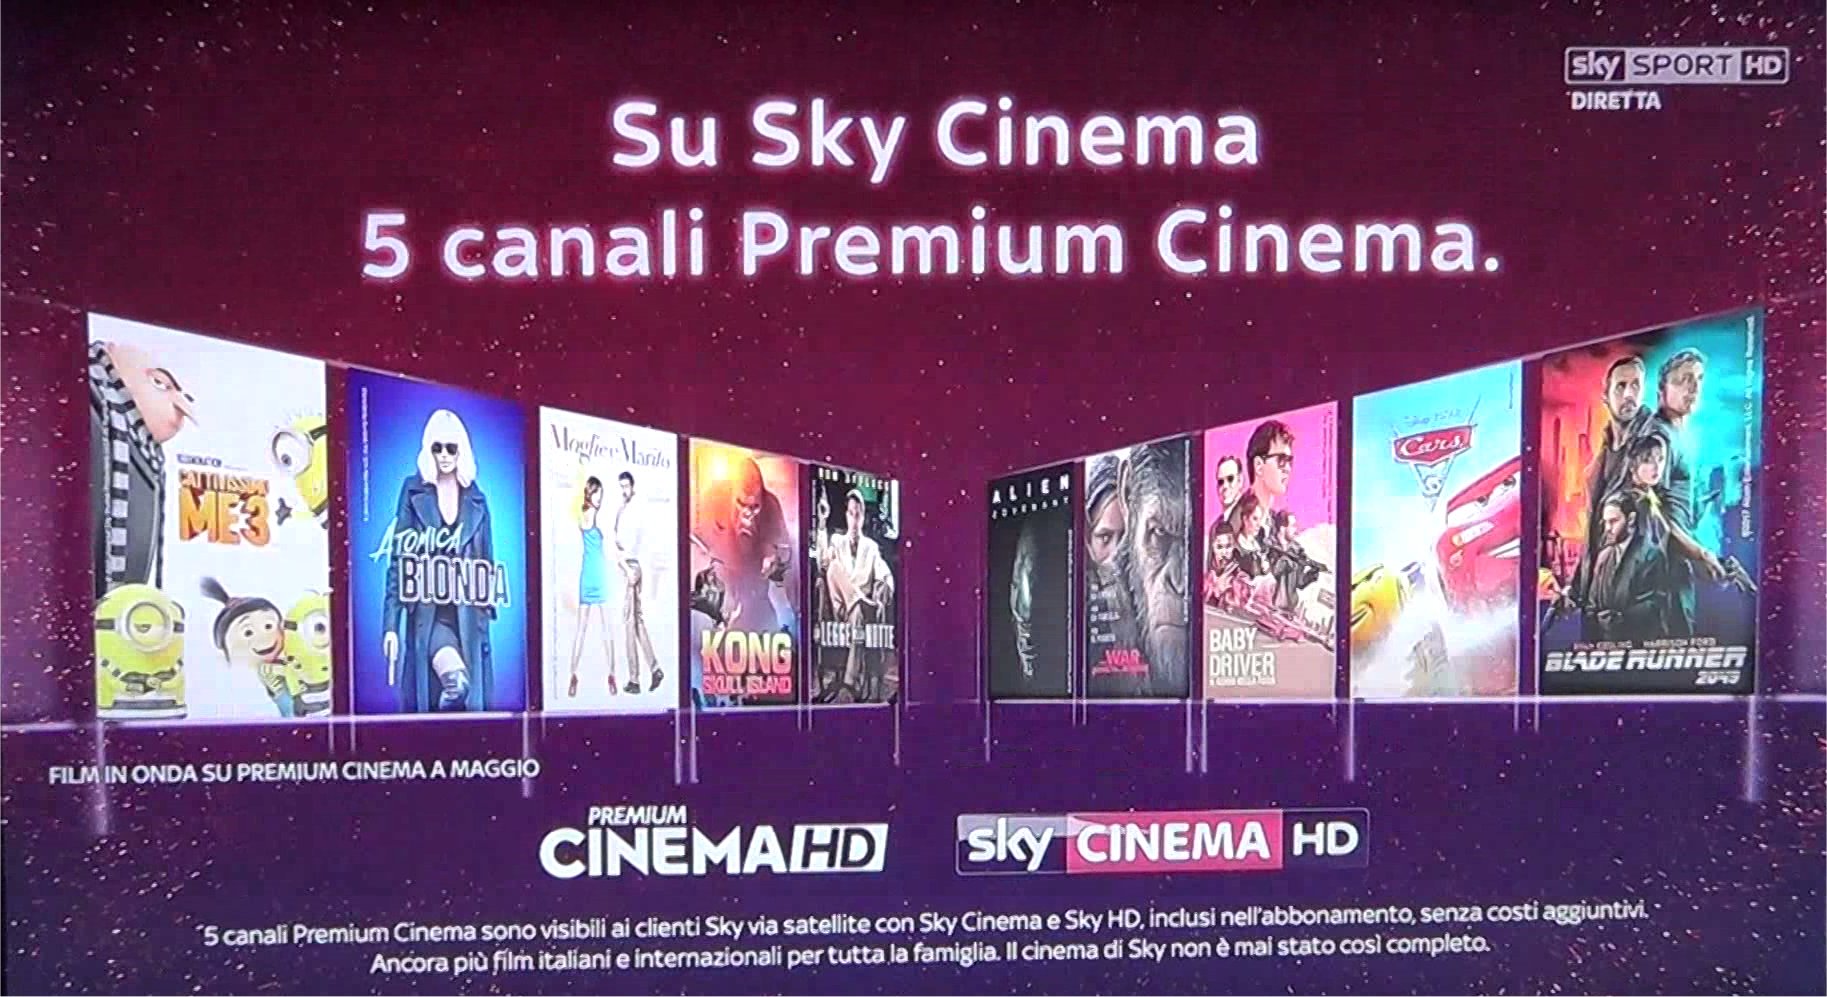 Digitalia rivede offerta commerciale dei canali Premium Cinema e Serie